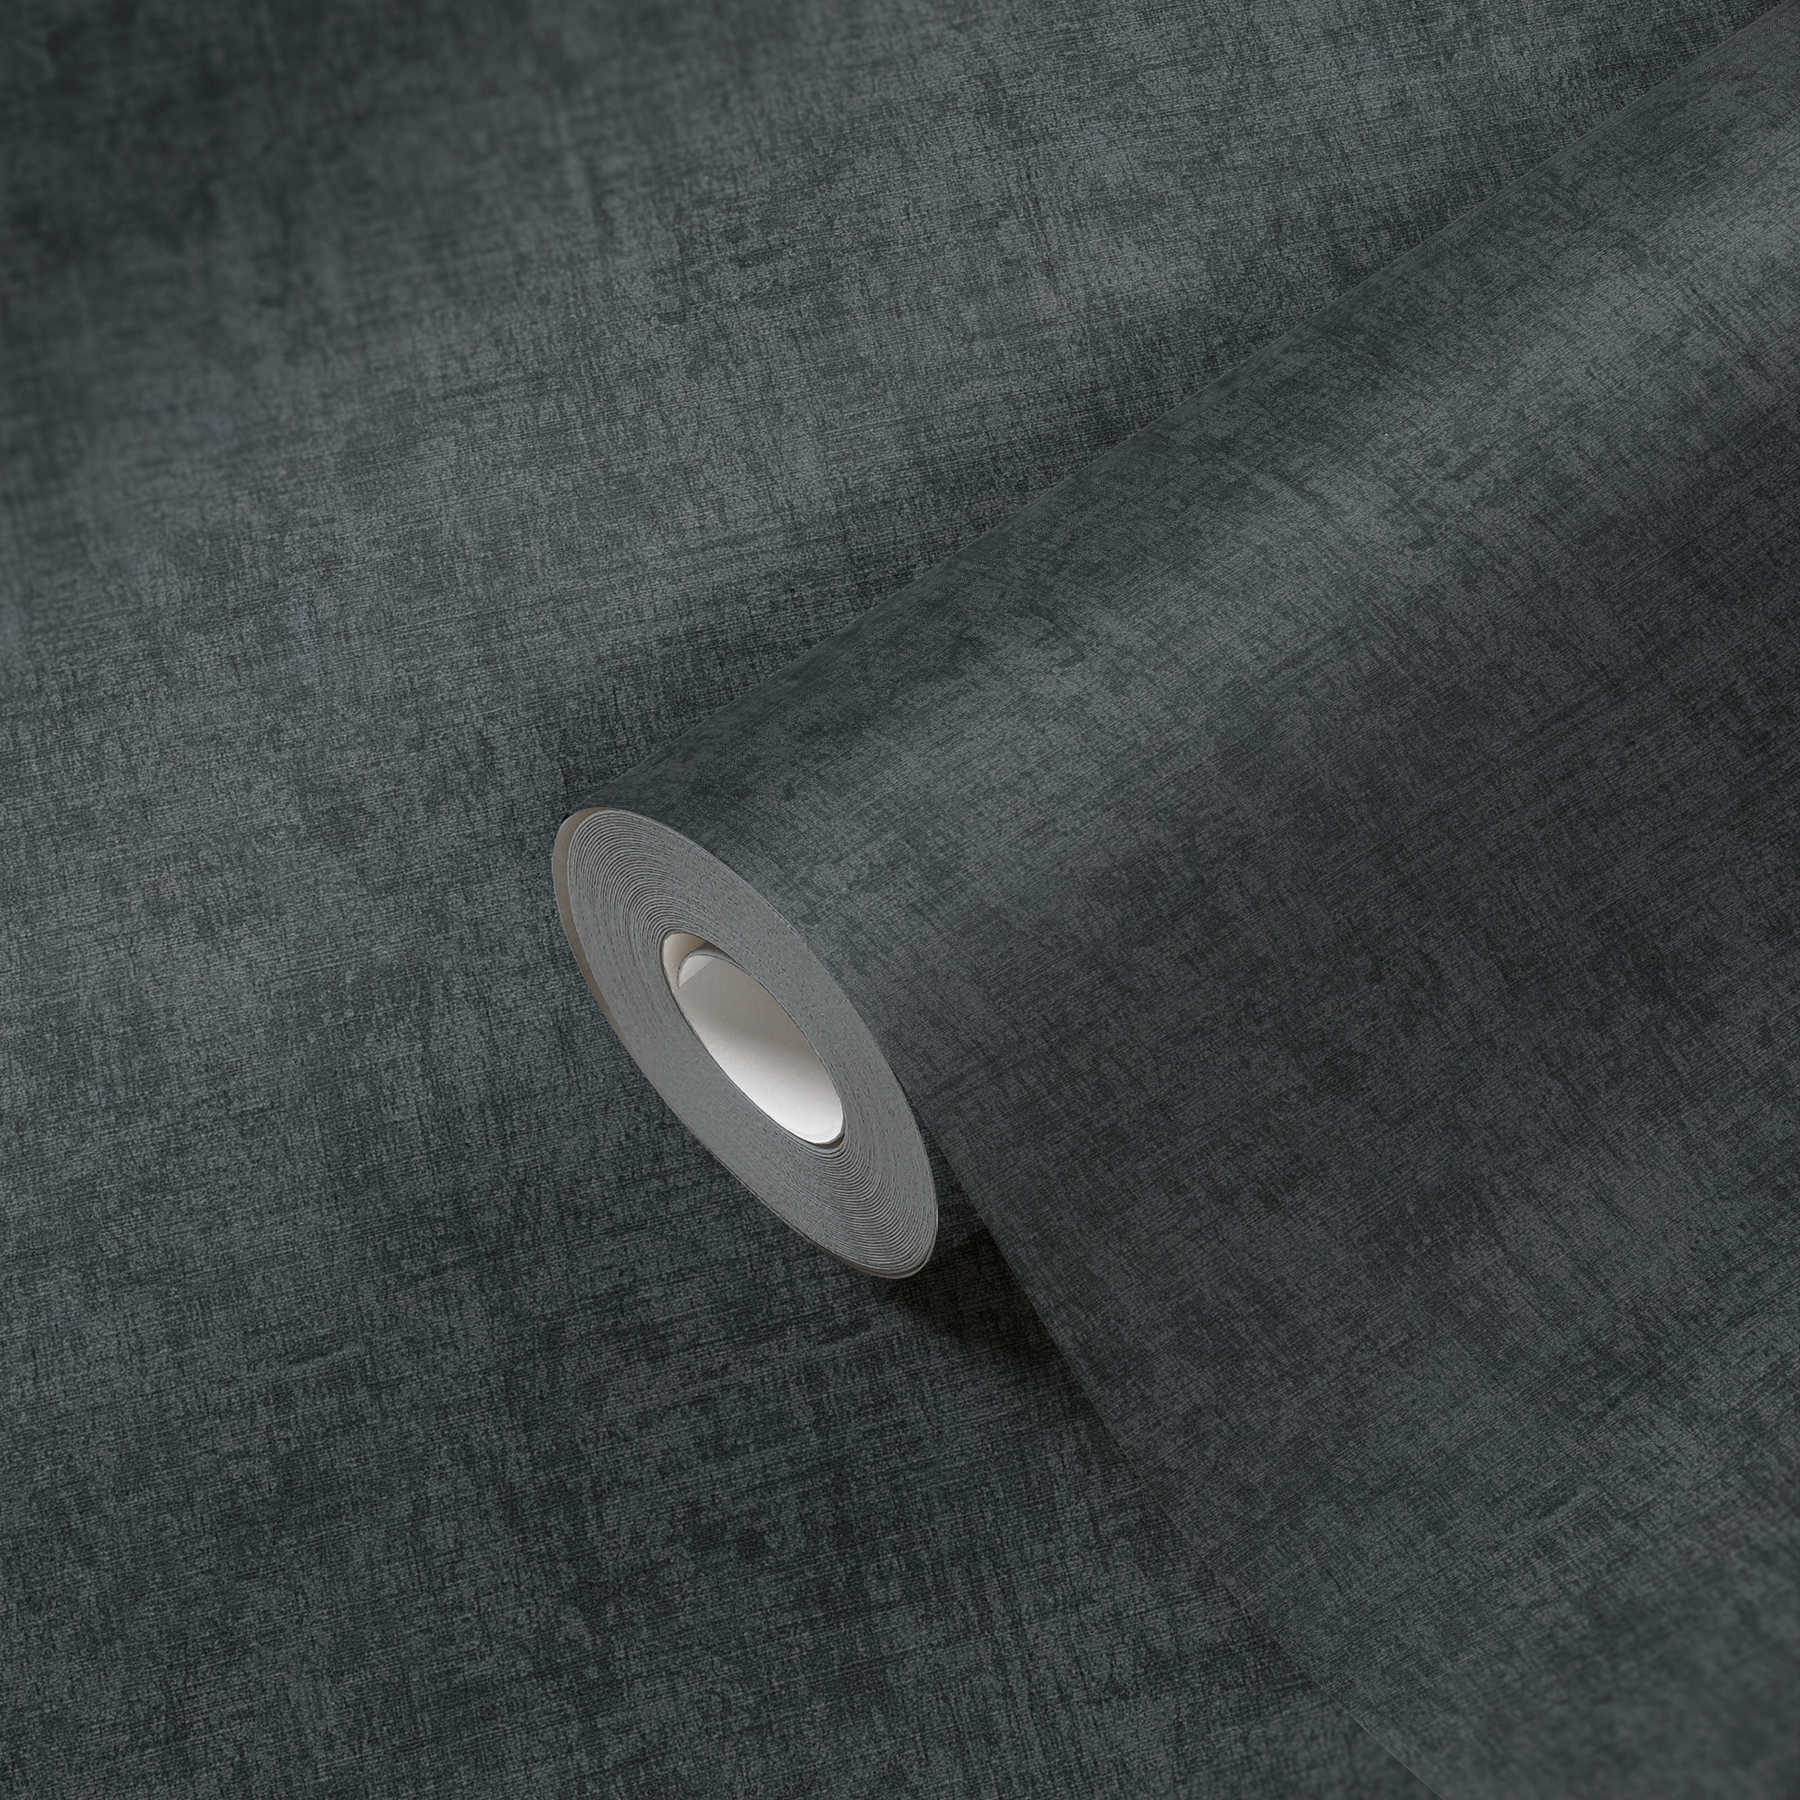             Dunkle Tapete mit Farb- und Strukturmuster – Grau, Schwarz
        